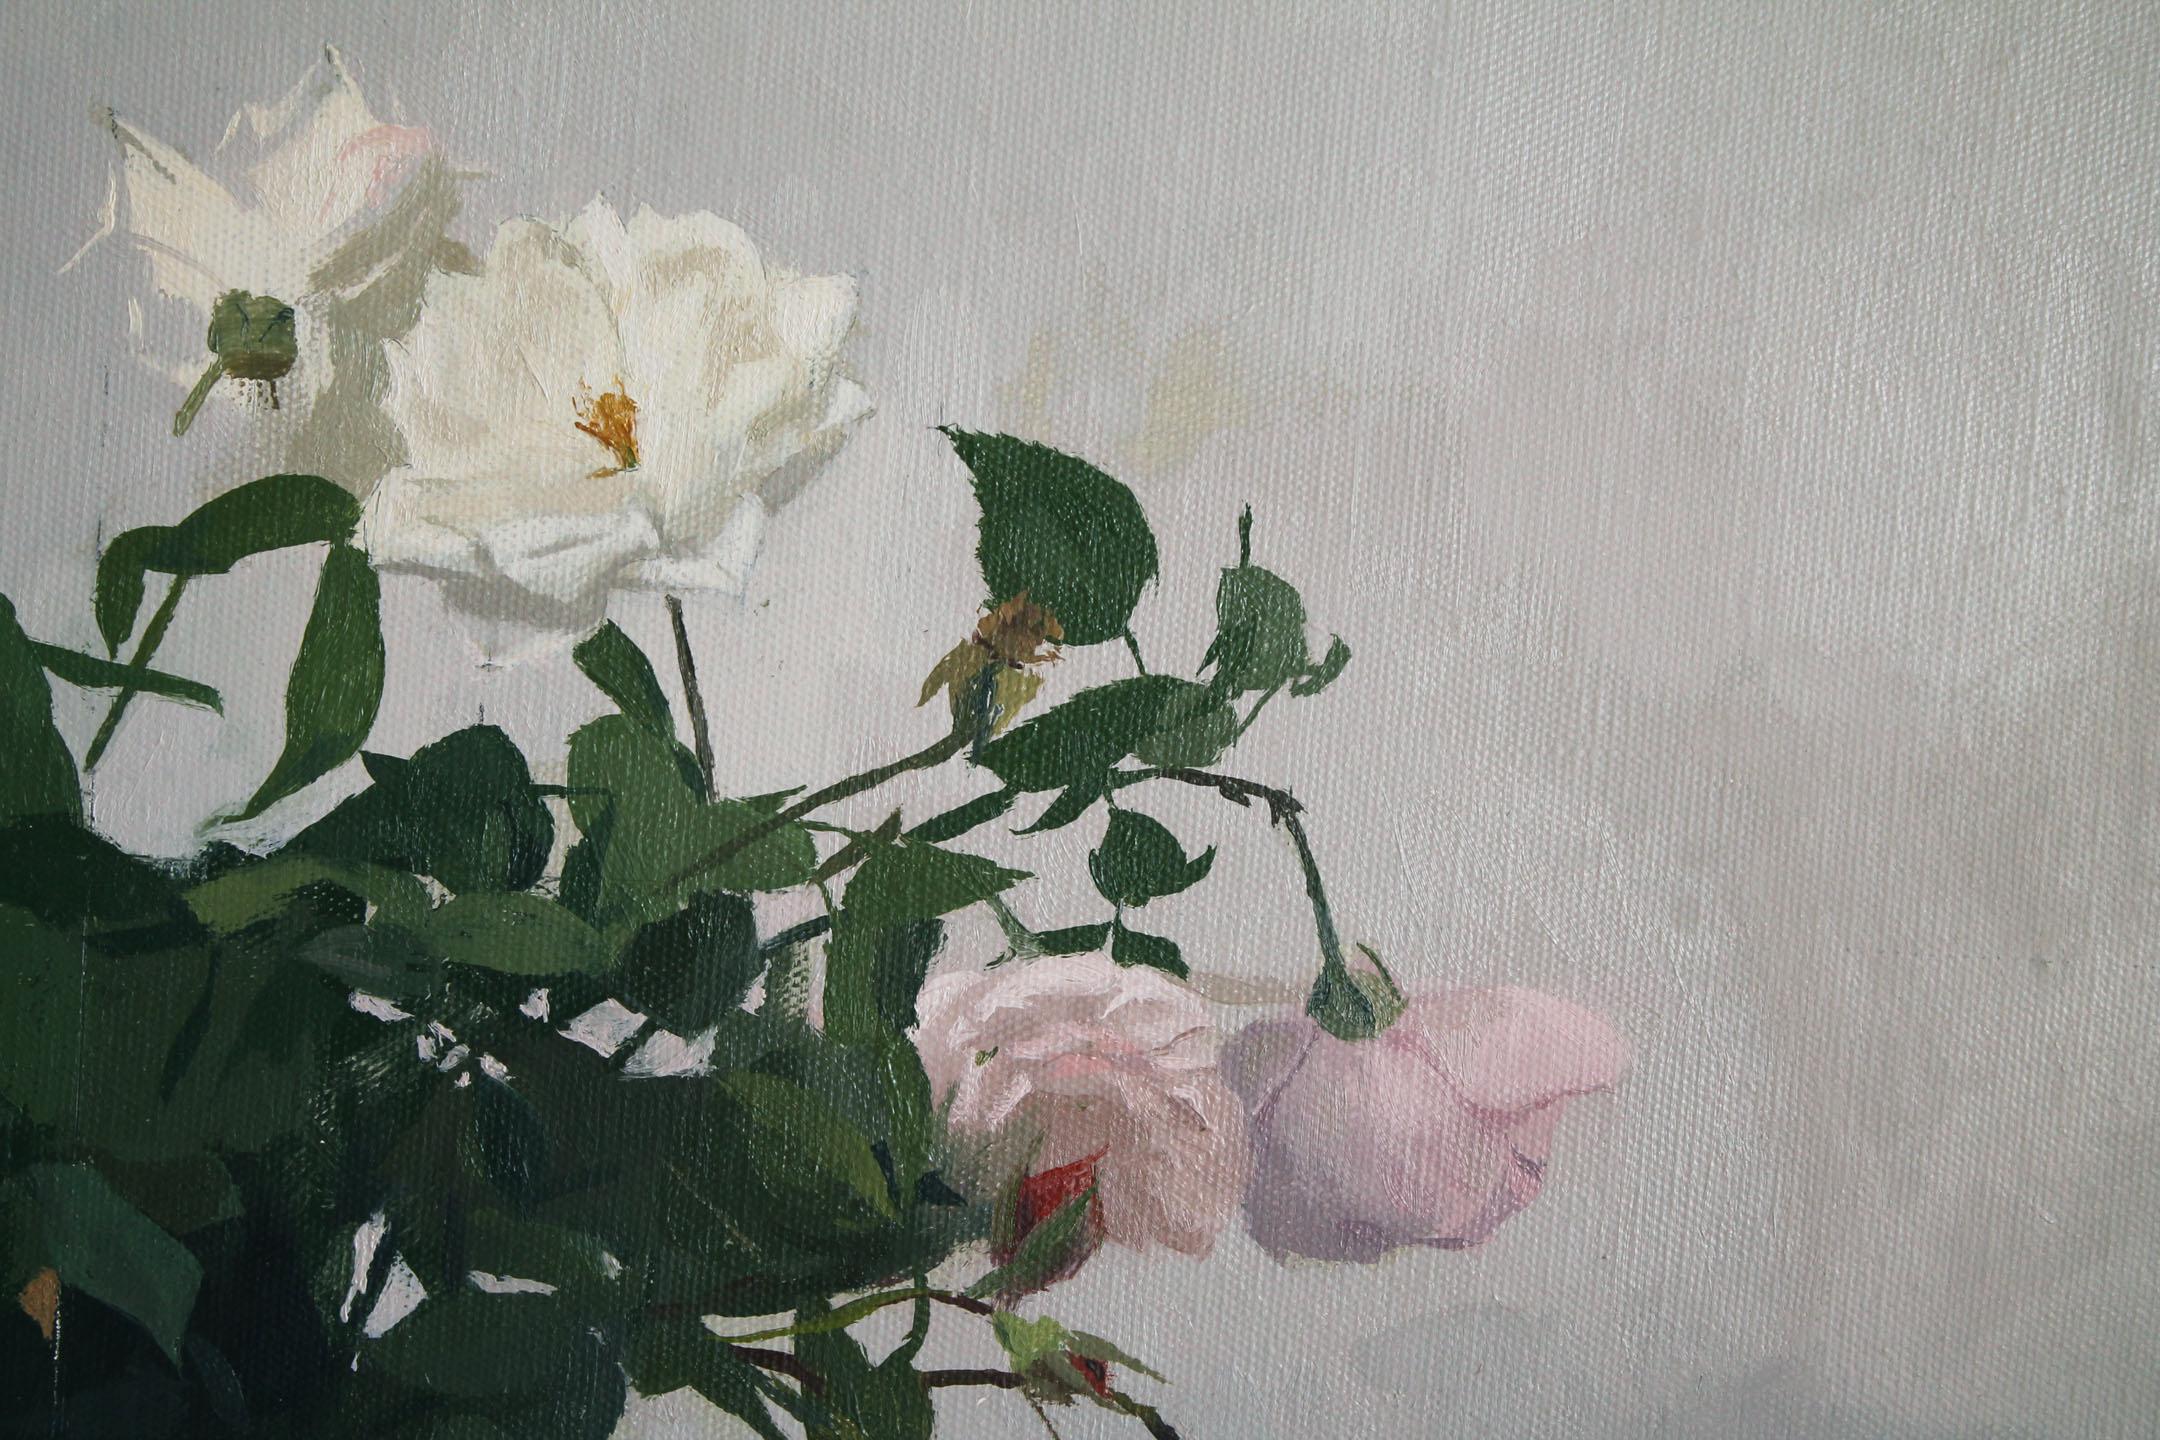 Garden Roses 2 - Gray Still-Life Painting by Martin Dimitrov